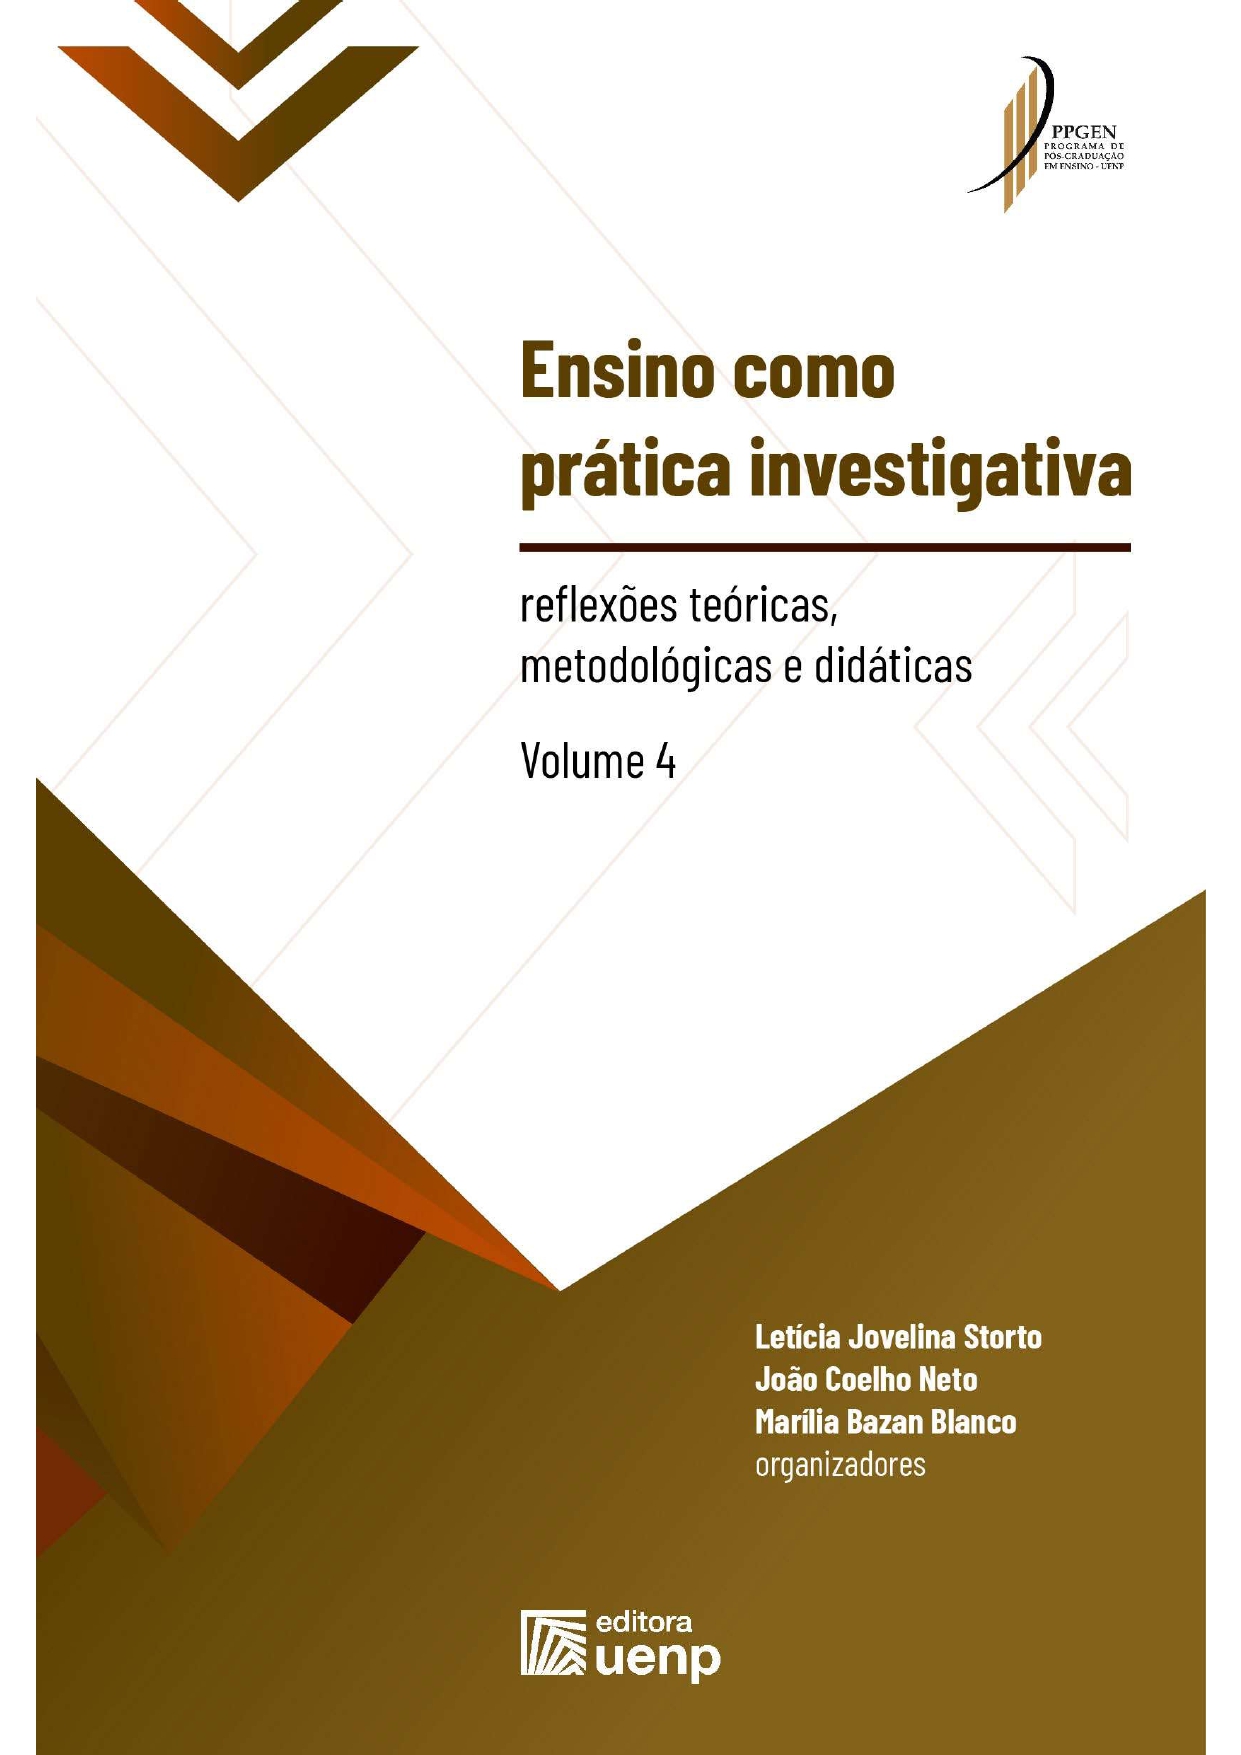 ENSINO COMO PRÁTICA INVESTIGATIVA: reflexões teóricas, metodológicas e didáticas - VOLUME 4